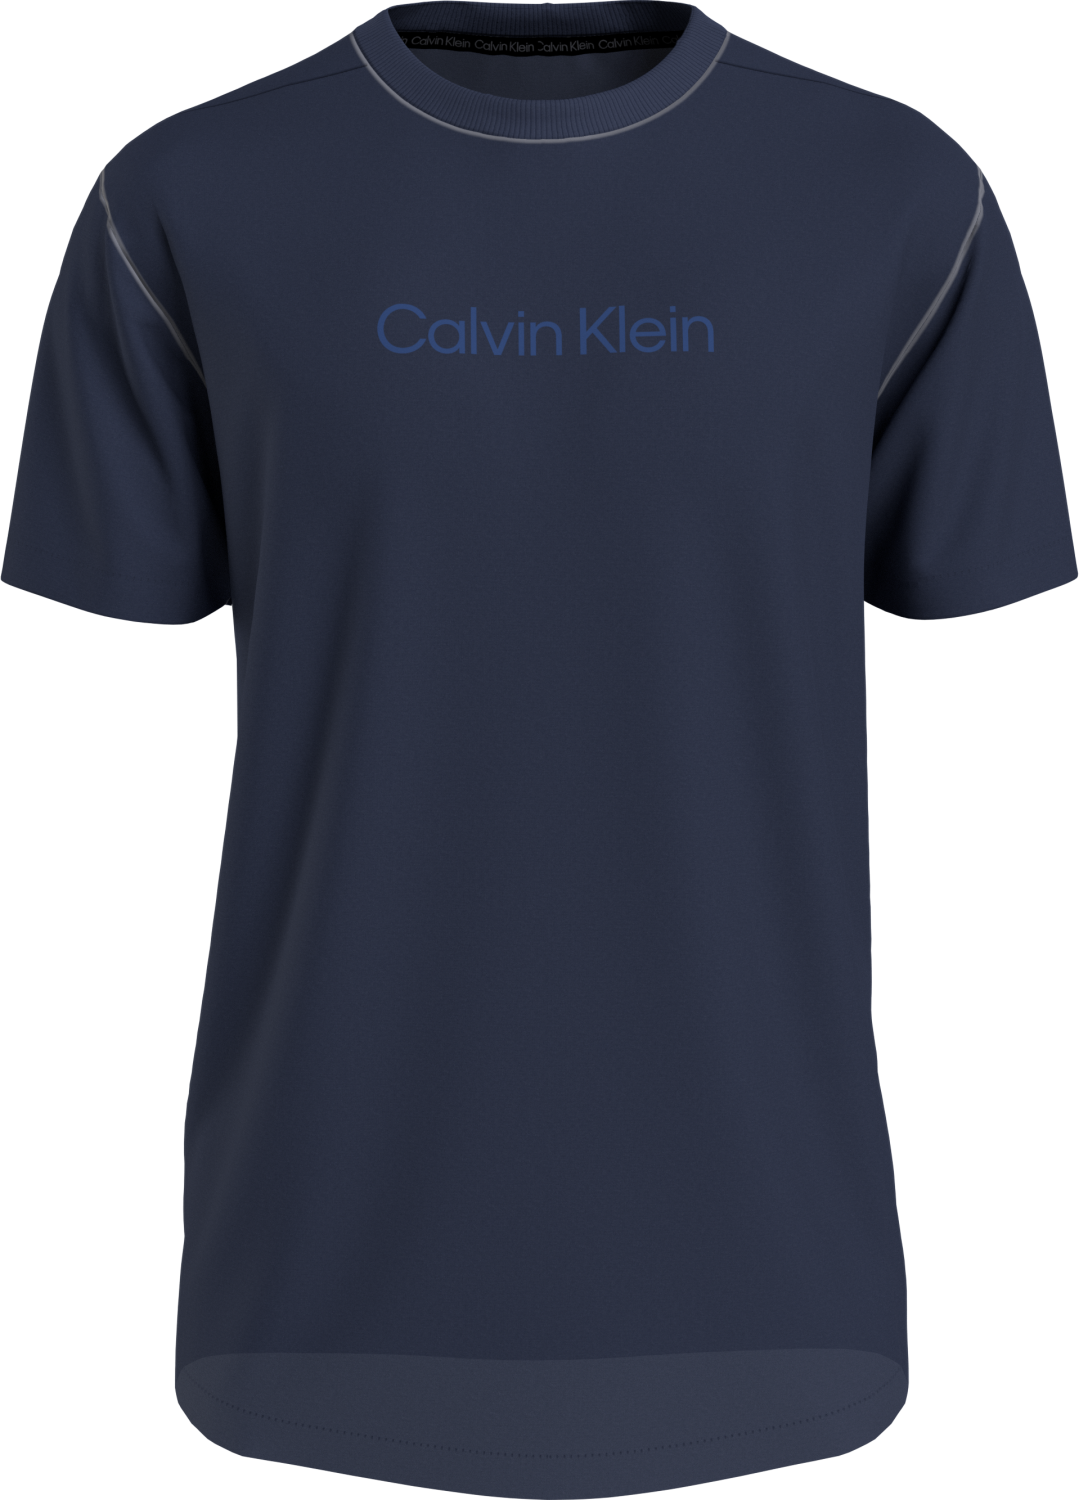 CALVIN KLEIN Crew Neck Logo Tee - Signature Navy